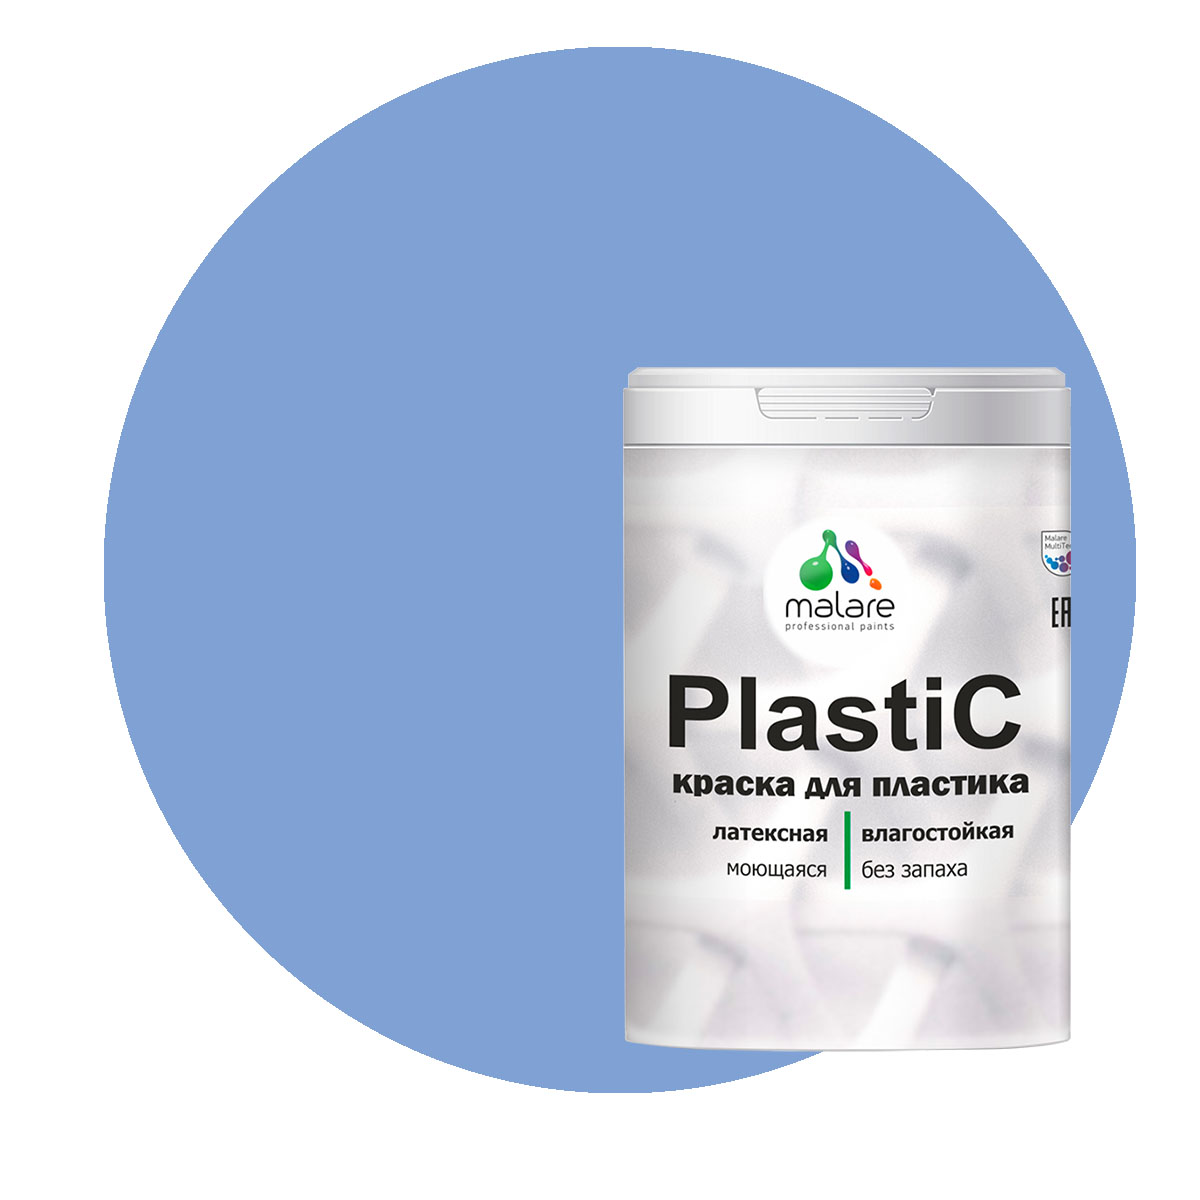 Краска Malare PlastiC для пластика, ПВХ, для сайдинга, стальной голубой 2 кг.